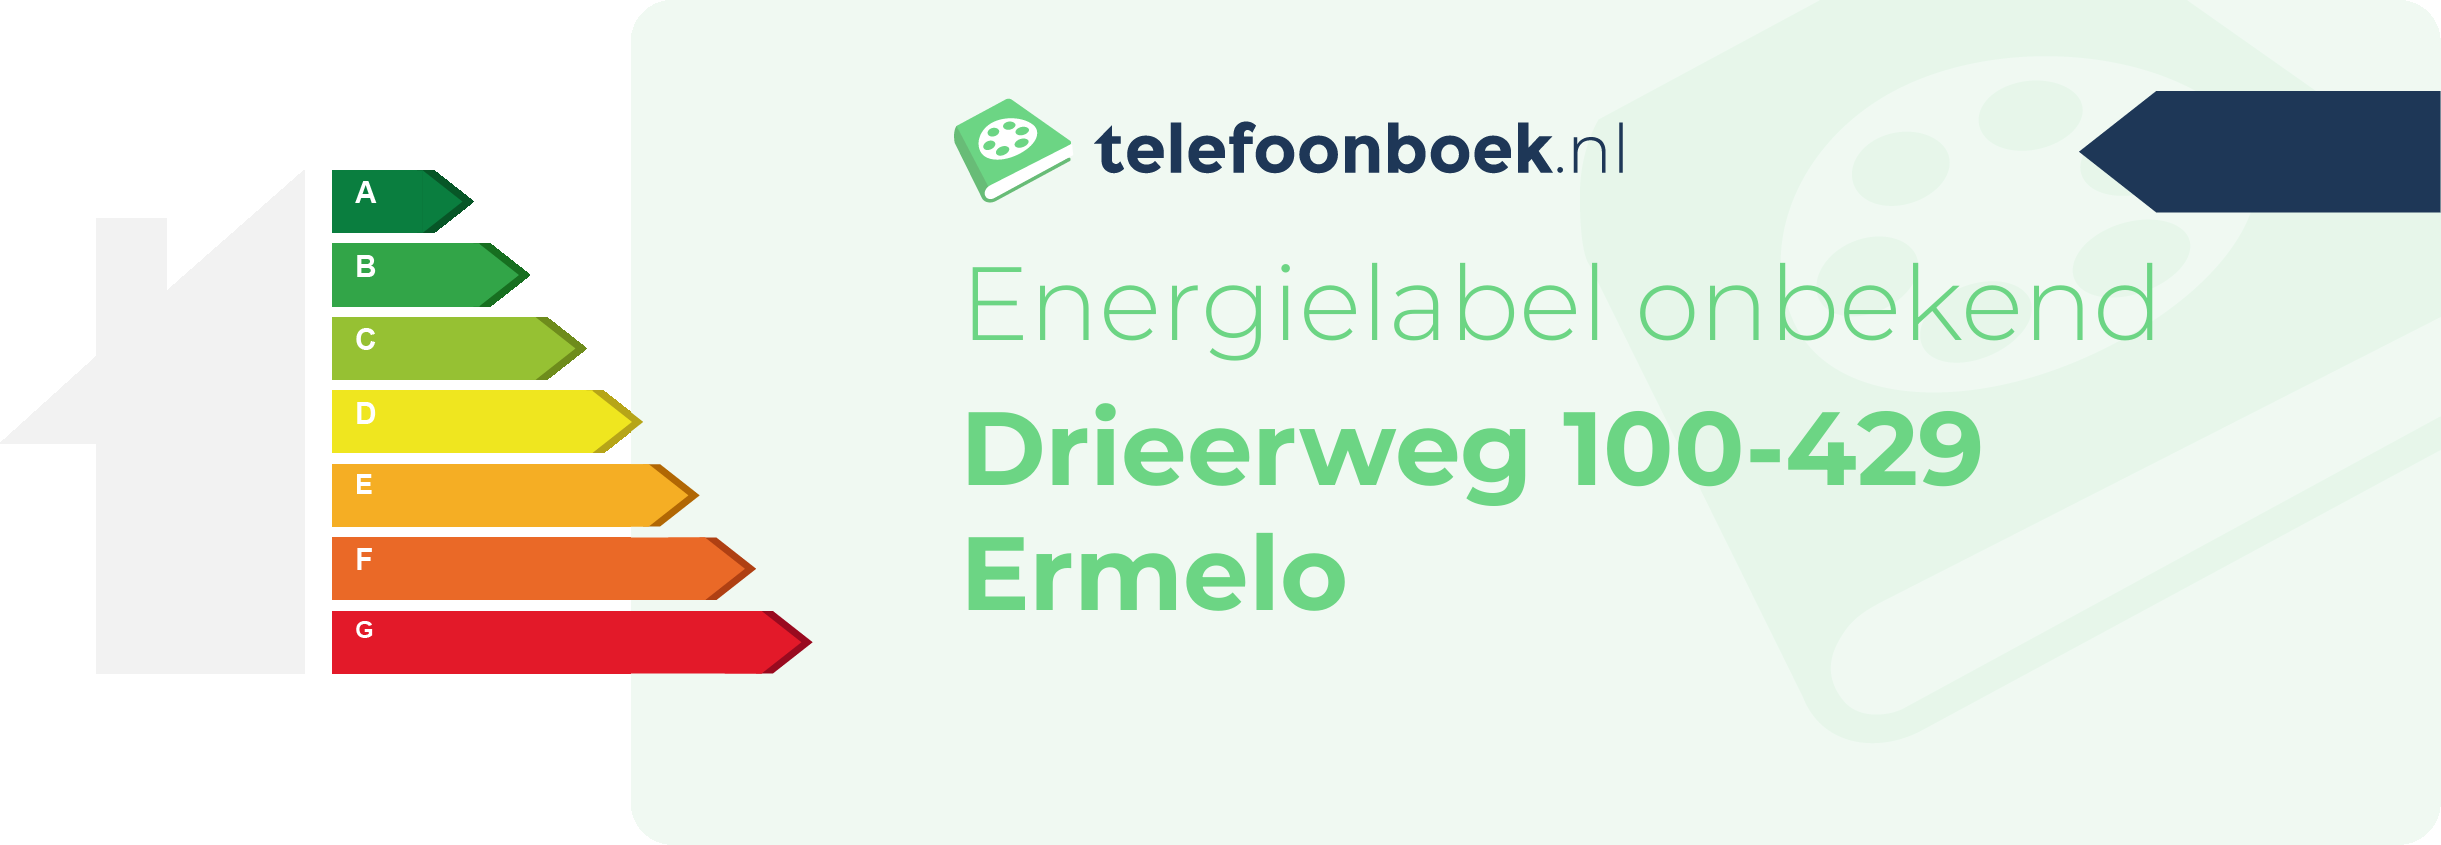 Energielabel Drieerweg 100-429 Ermelo